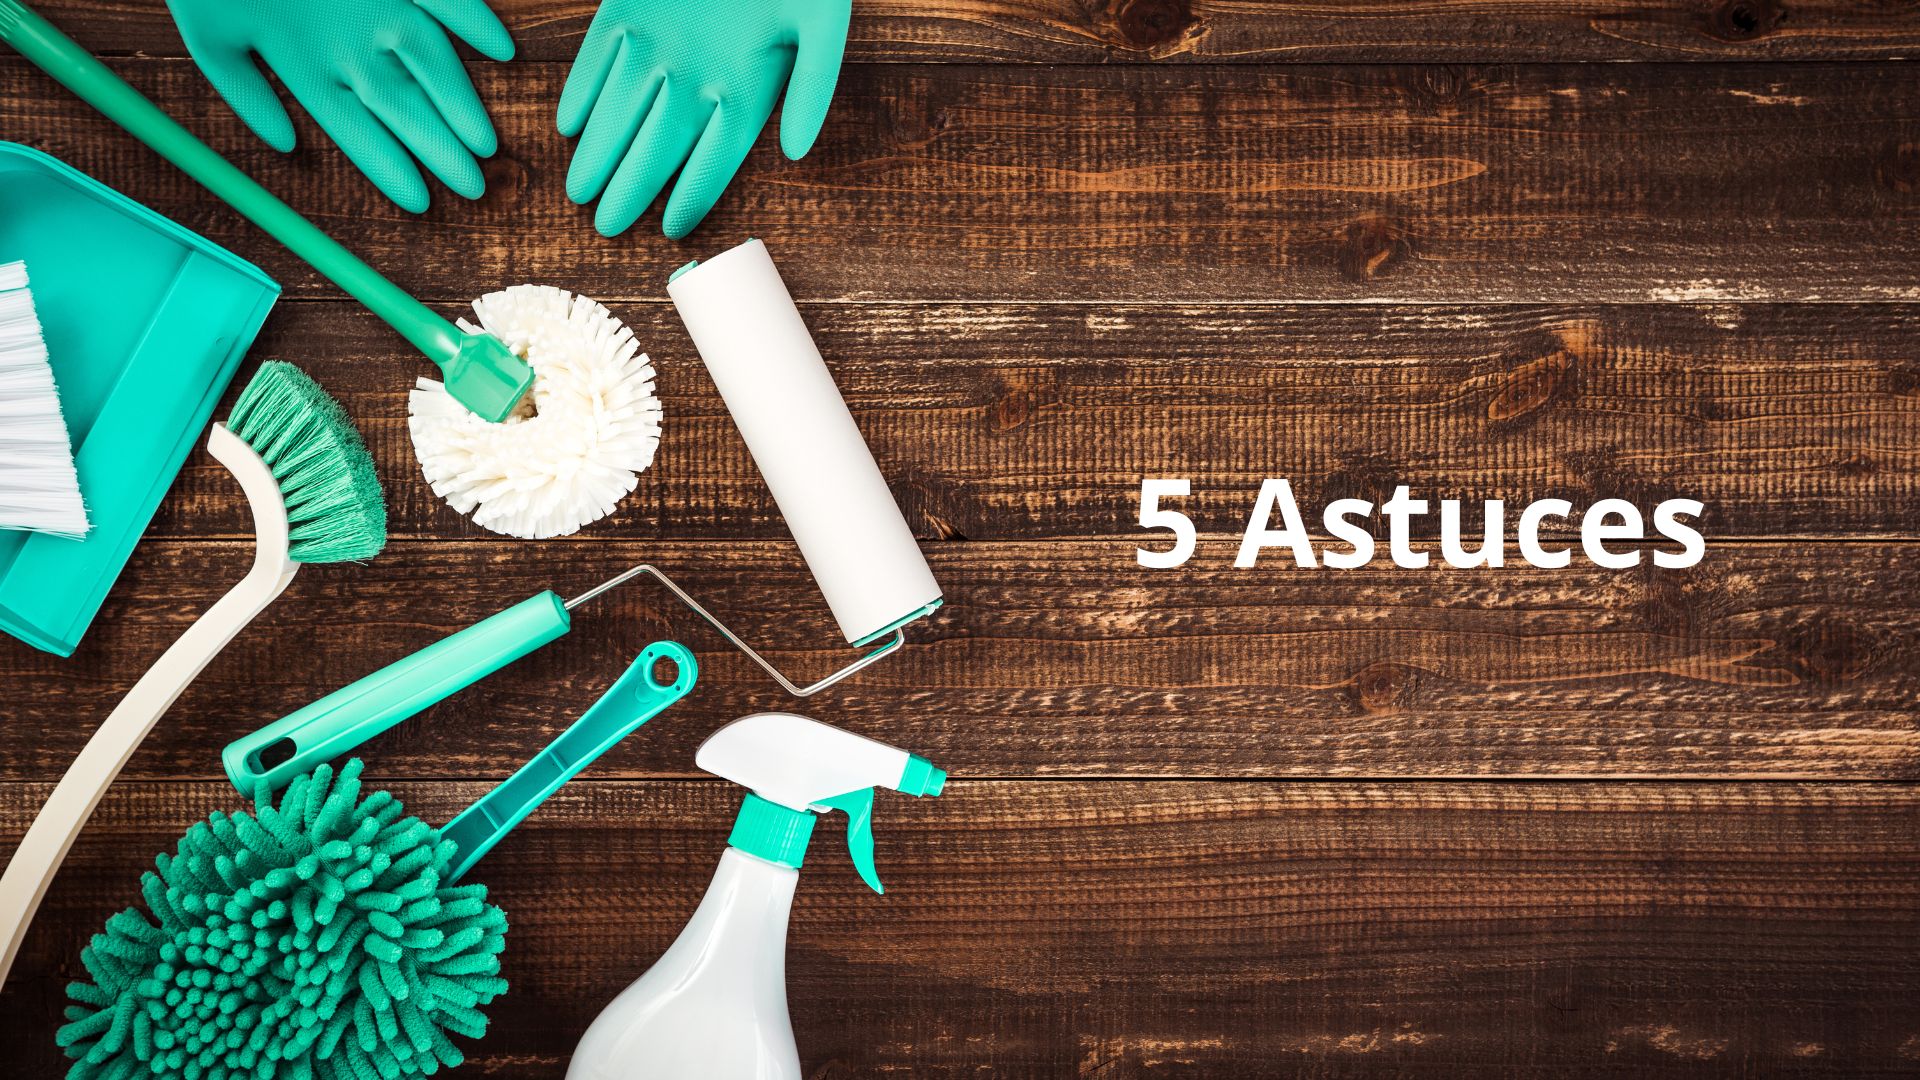 5 astuces pour nettoyer une éponge